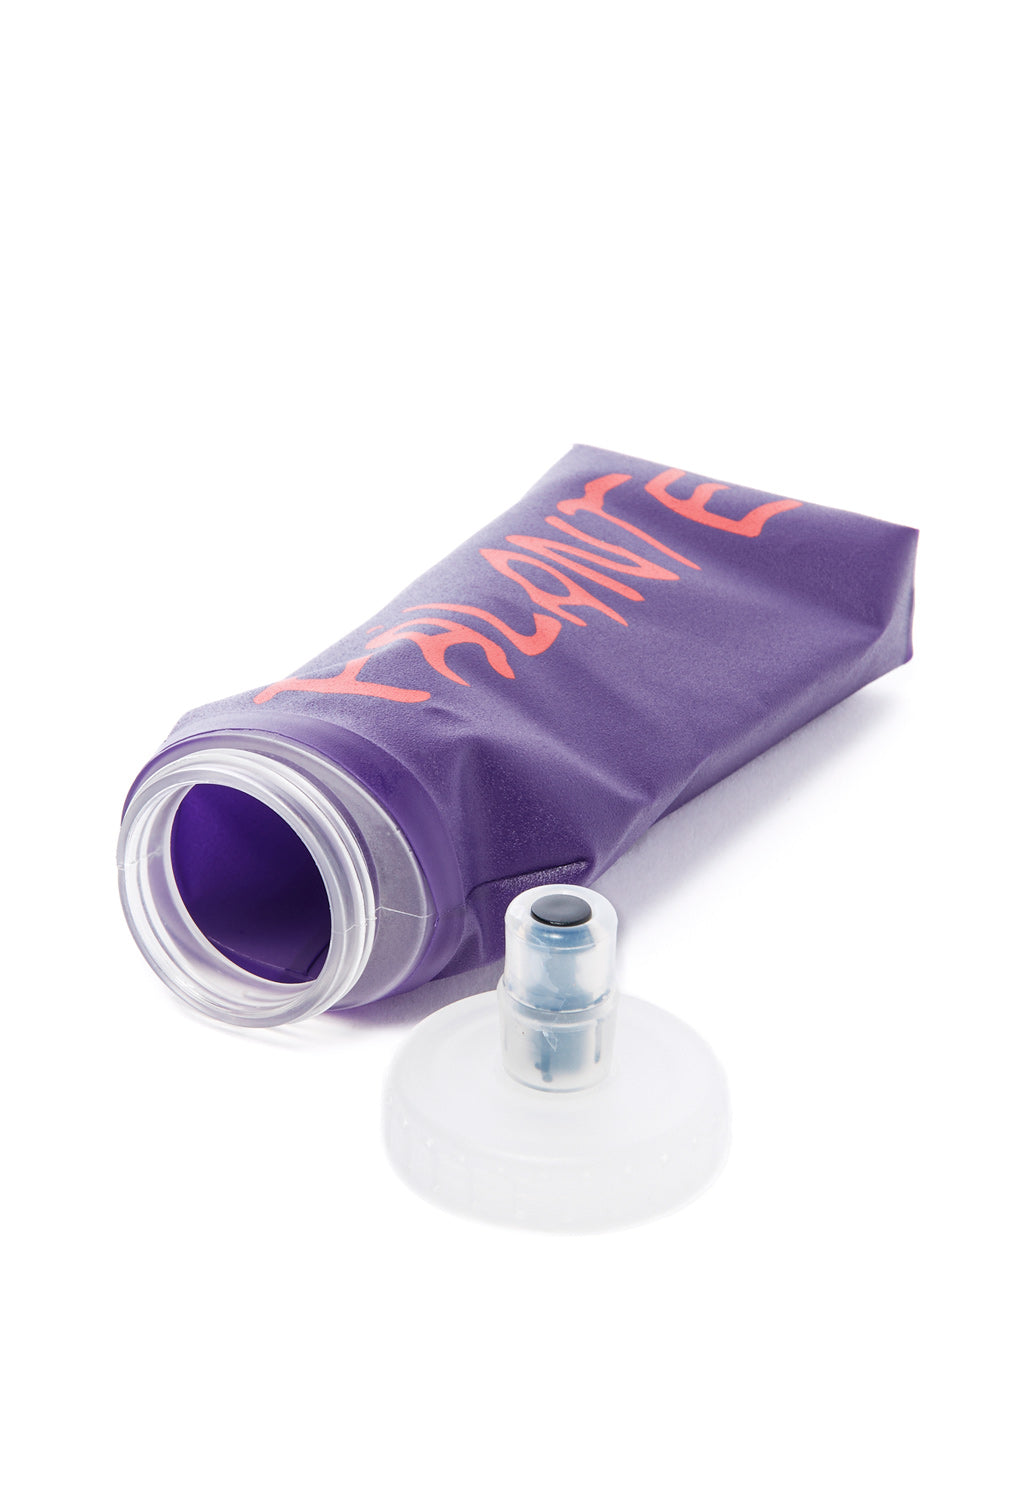 Pa'lante Packs Wide Water Bottle - Purple